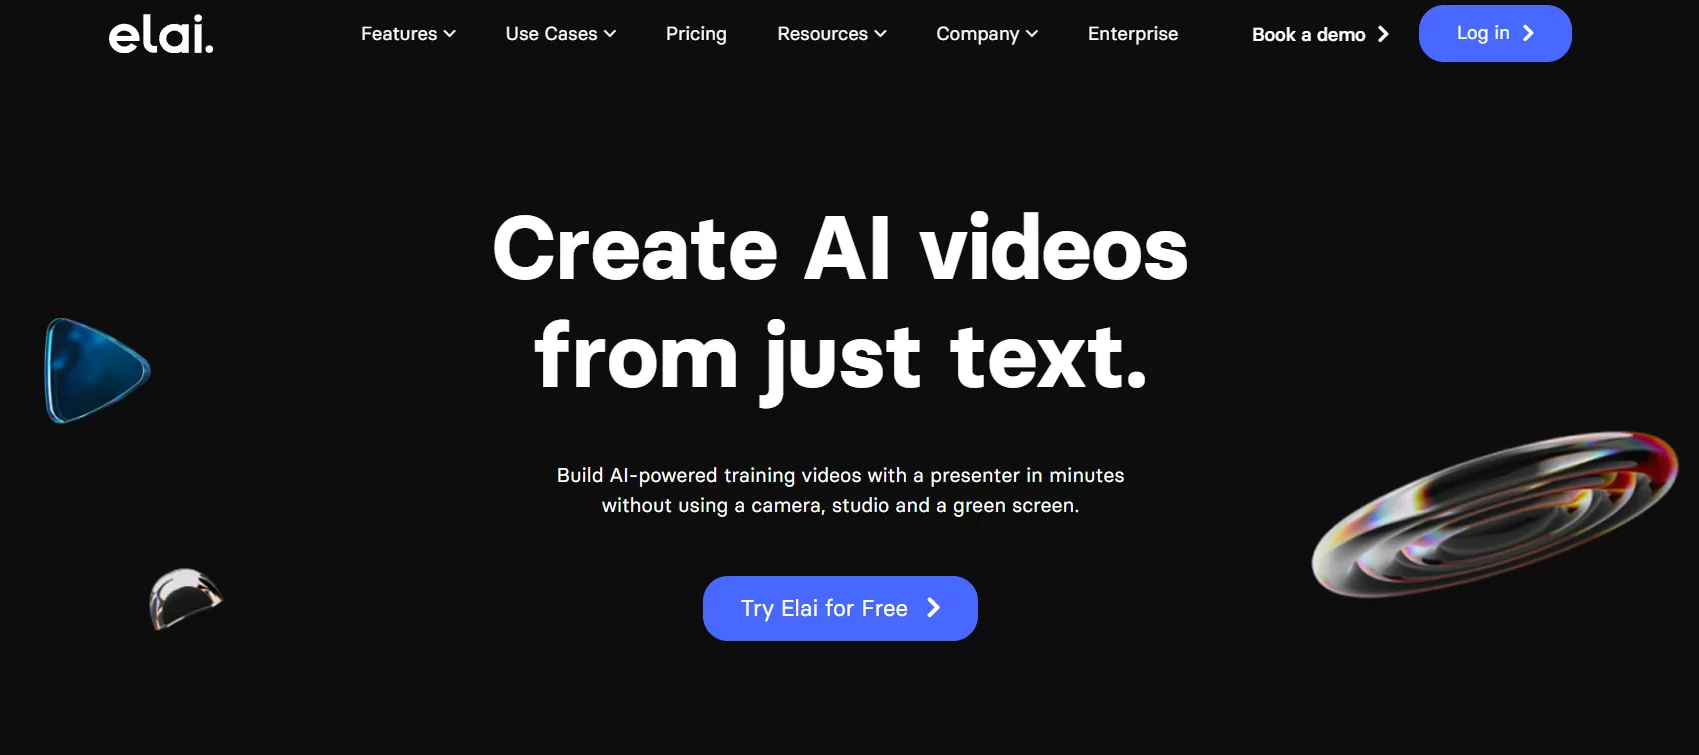 ابزار تبدیل متن به ویدیو با هوش مصنوعی Elai